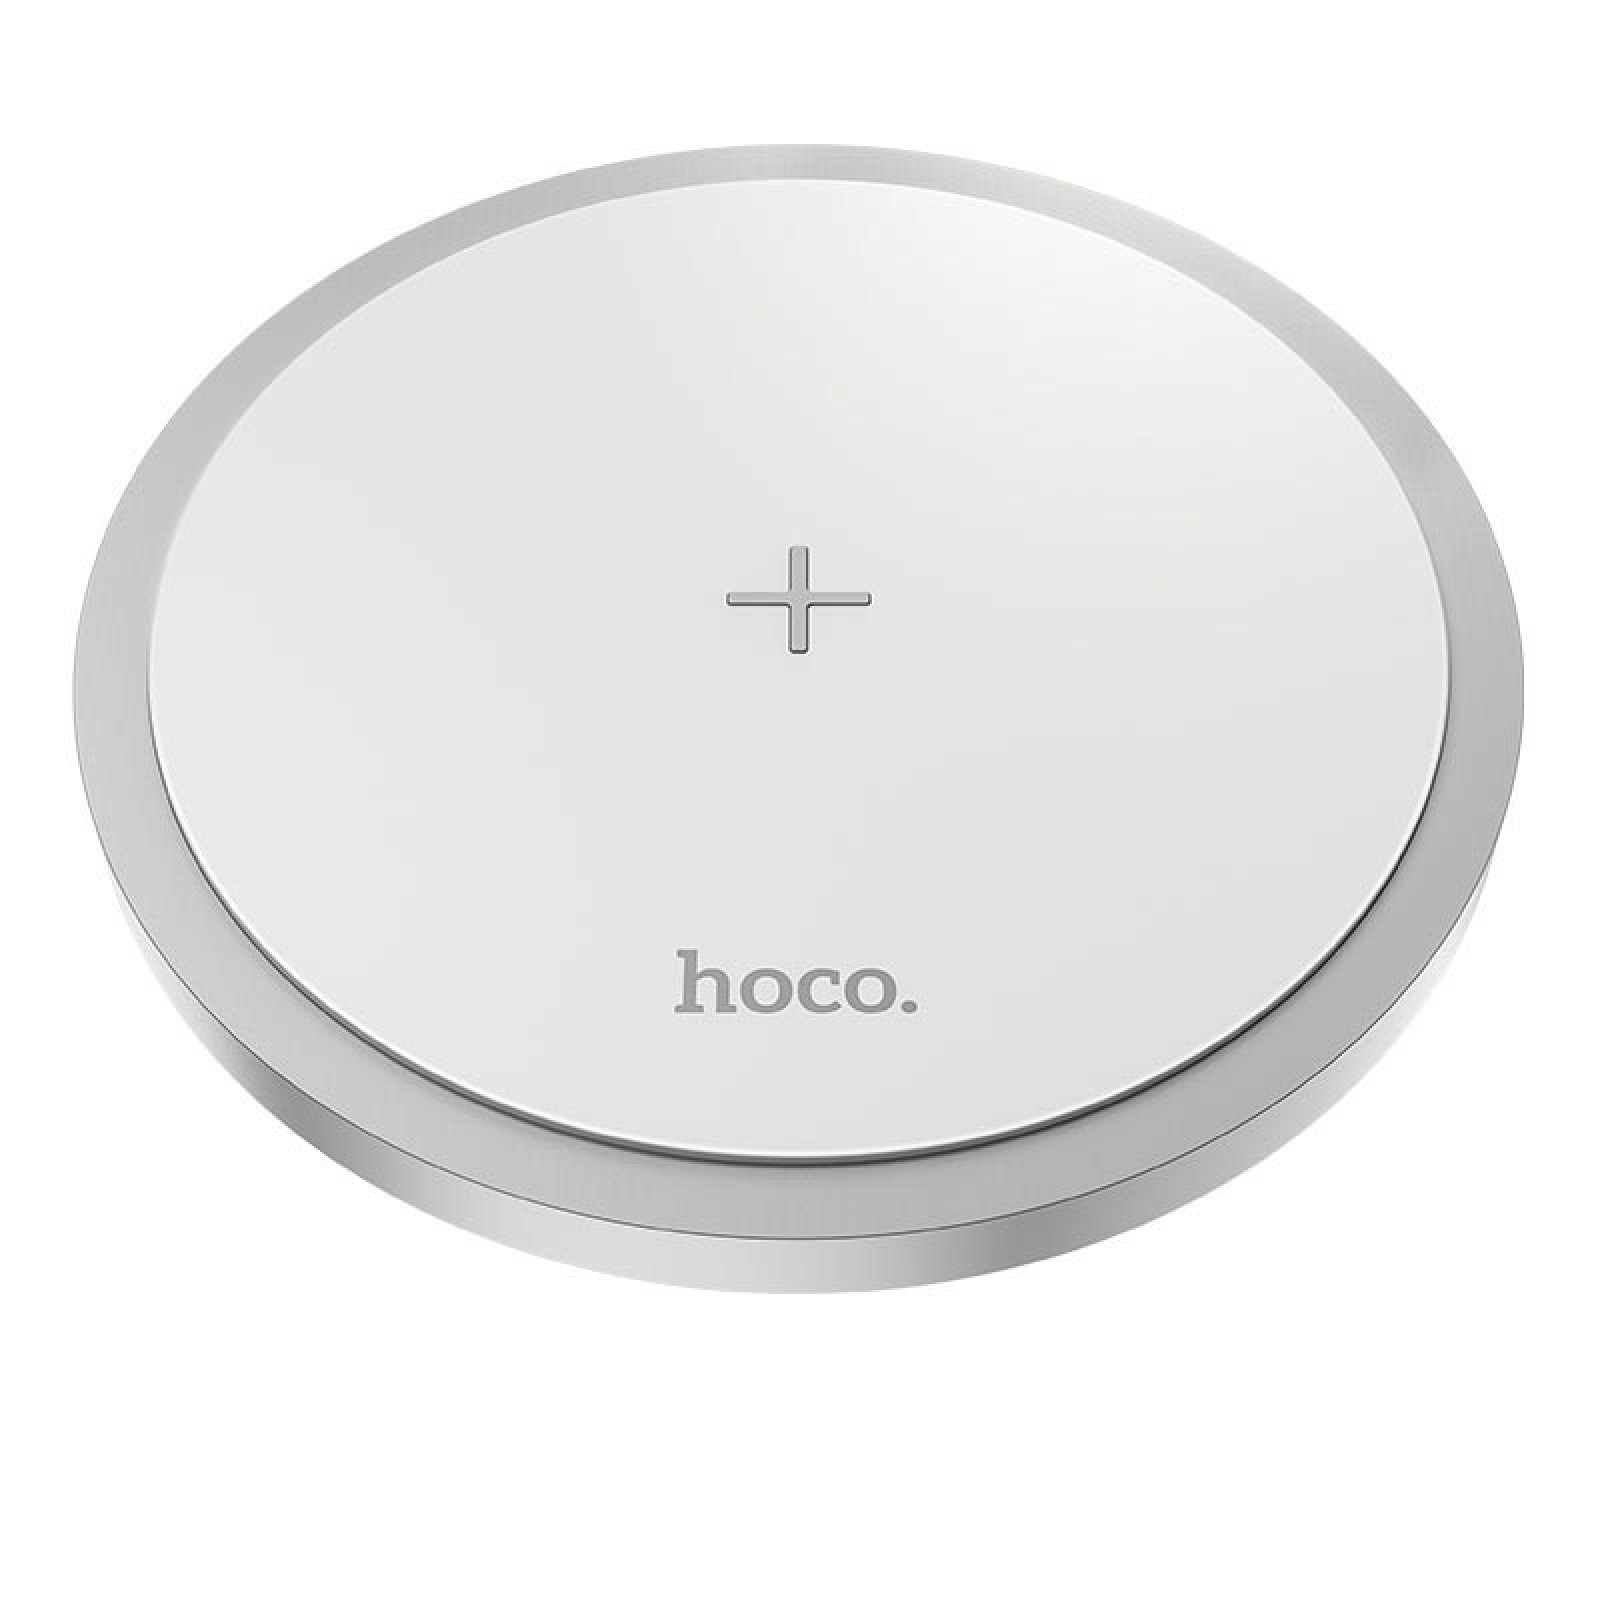 Безжично зарядно Hoco CW26 Powerful 15W wireless fast charger - Бяло